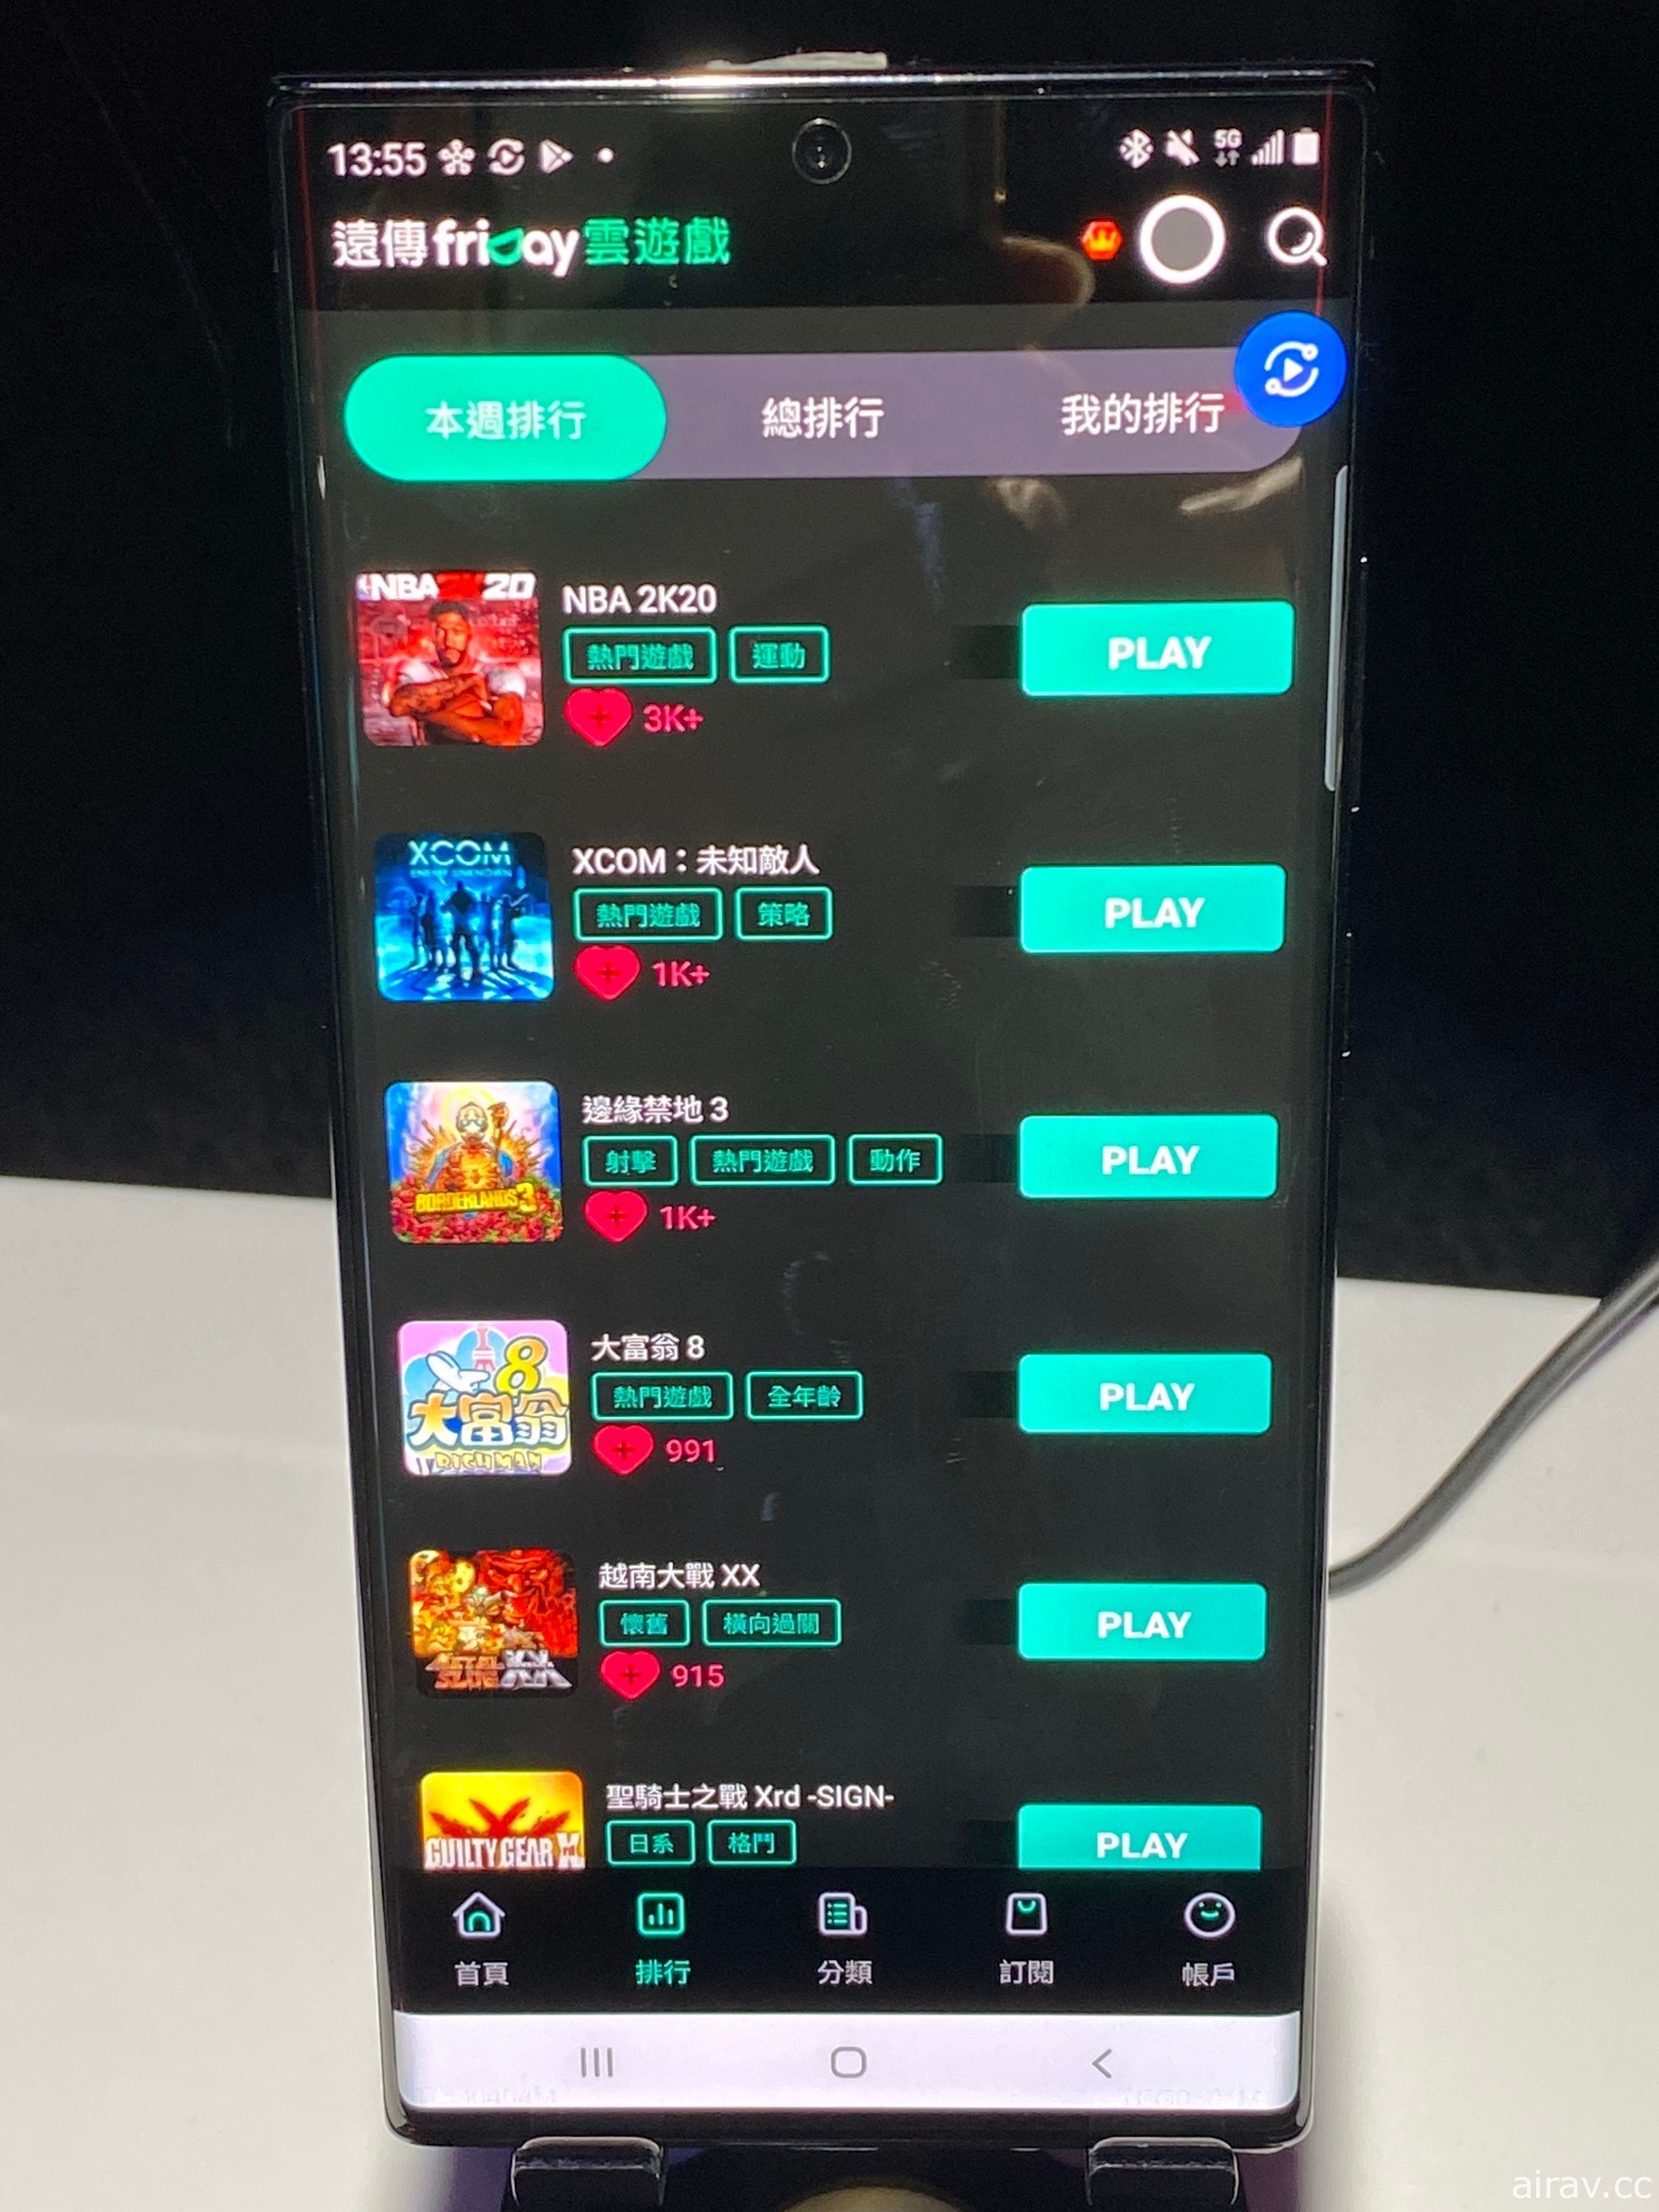 遠傳攜手優必達今起推出遠傳 friDay 雲遊戲服務 宣布早鳥價每月 199 元暢玩遊戲